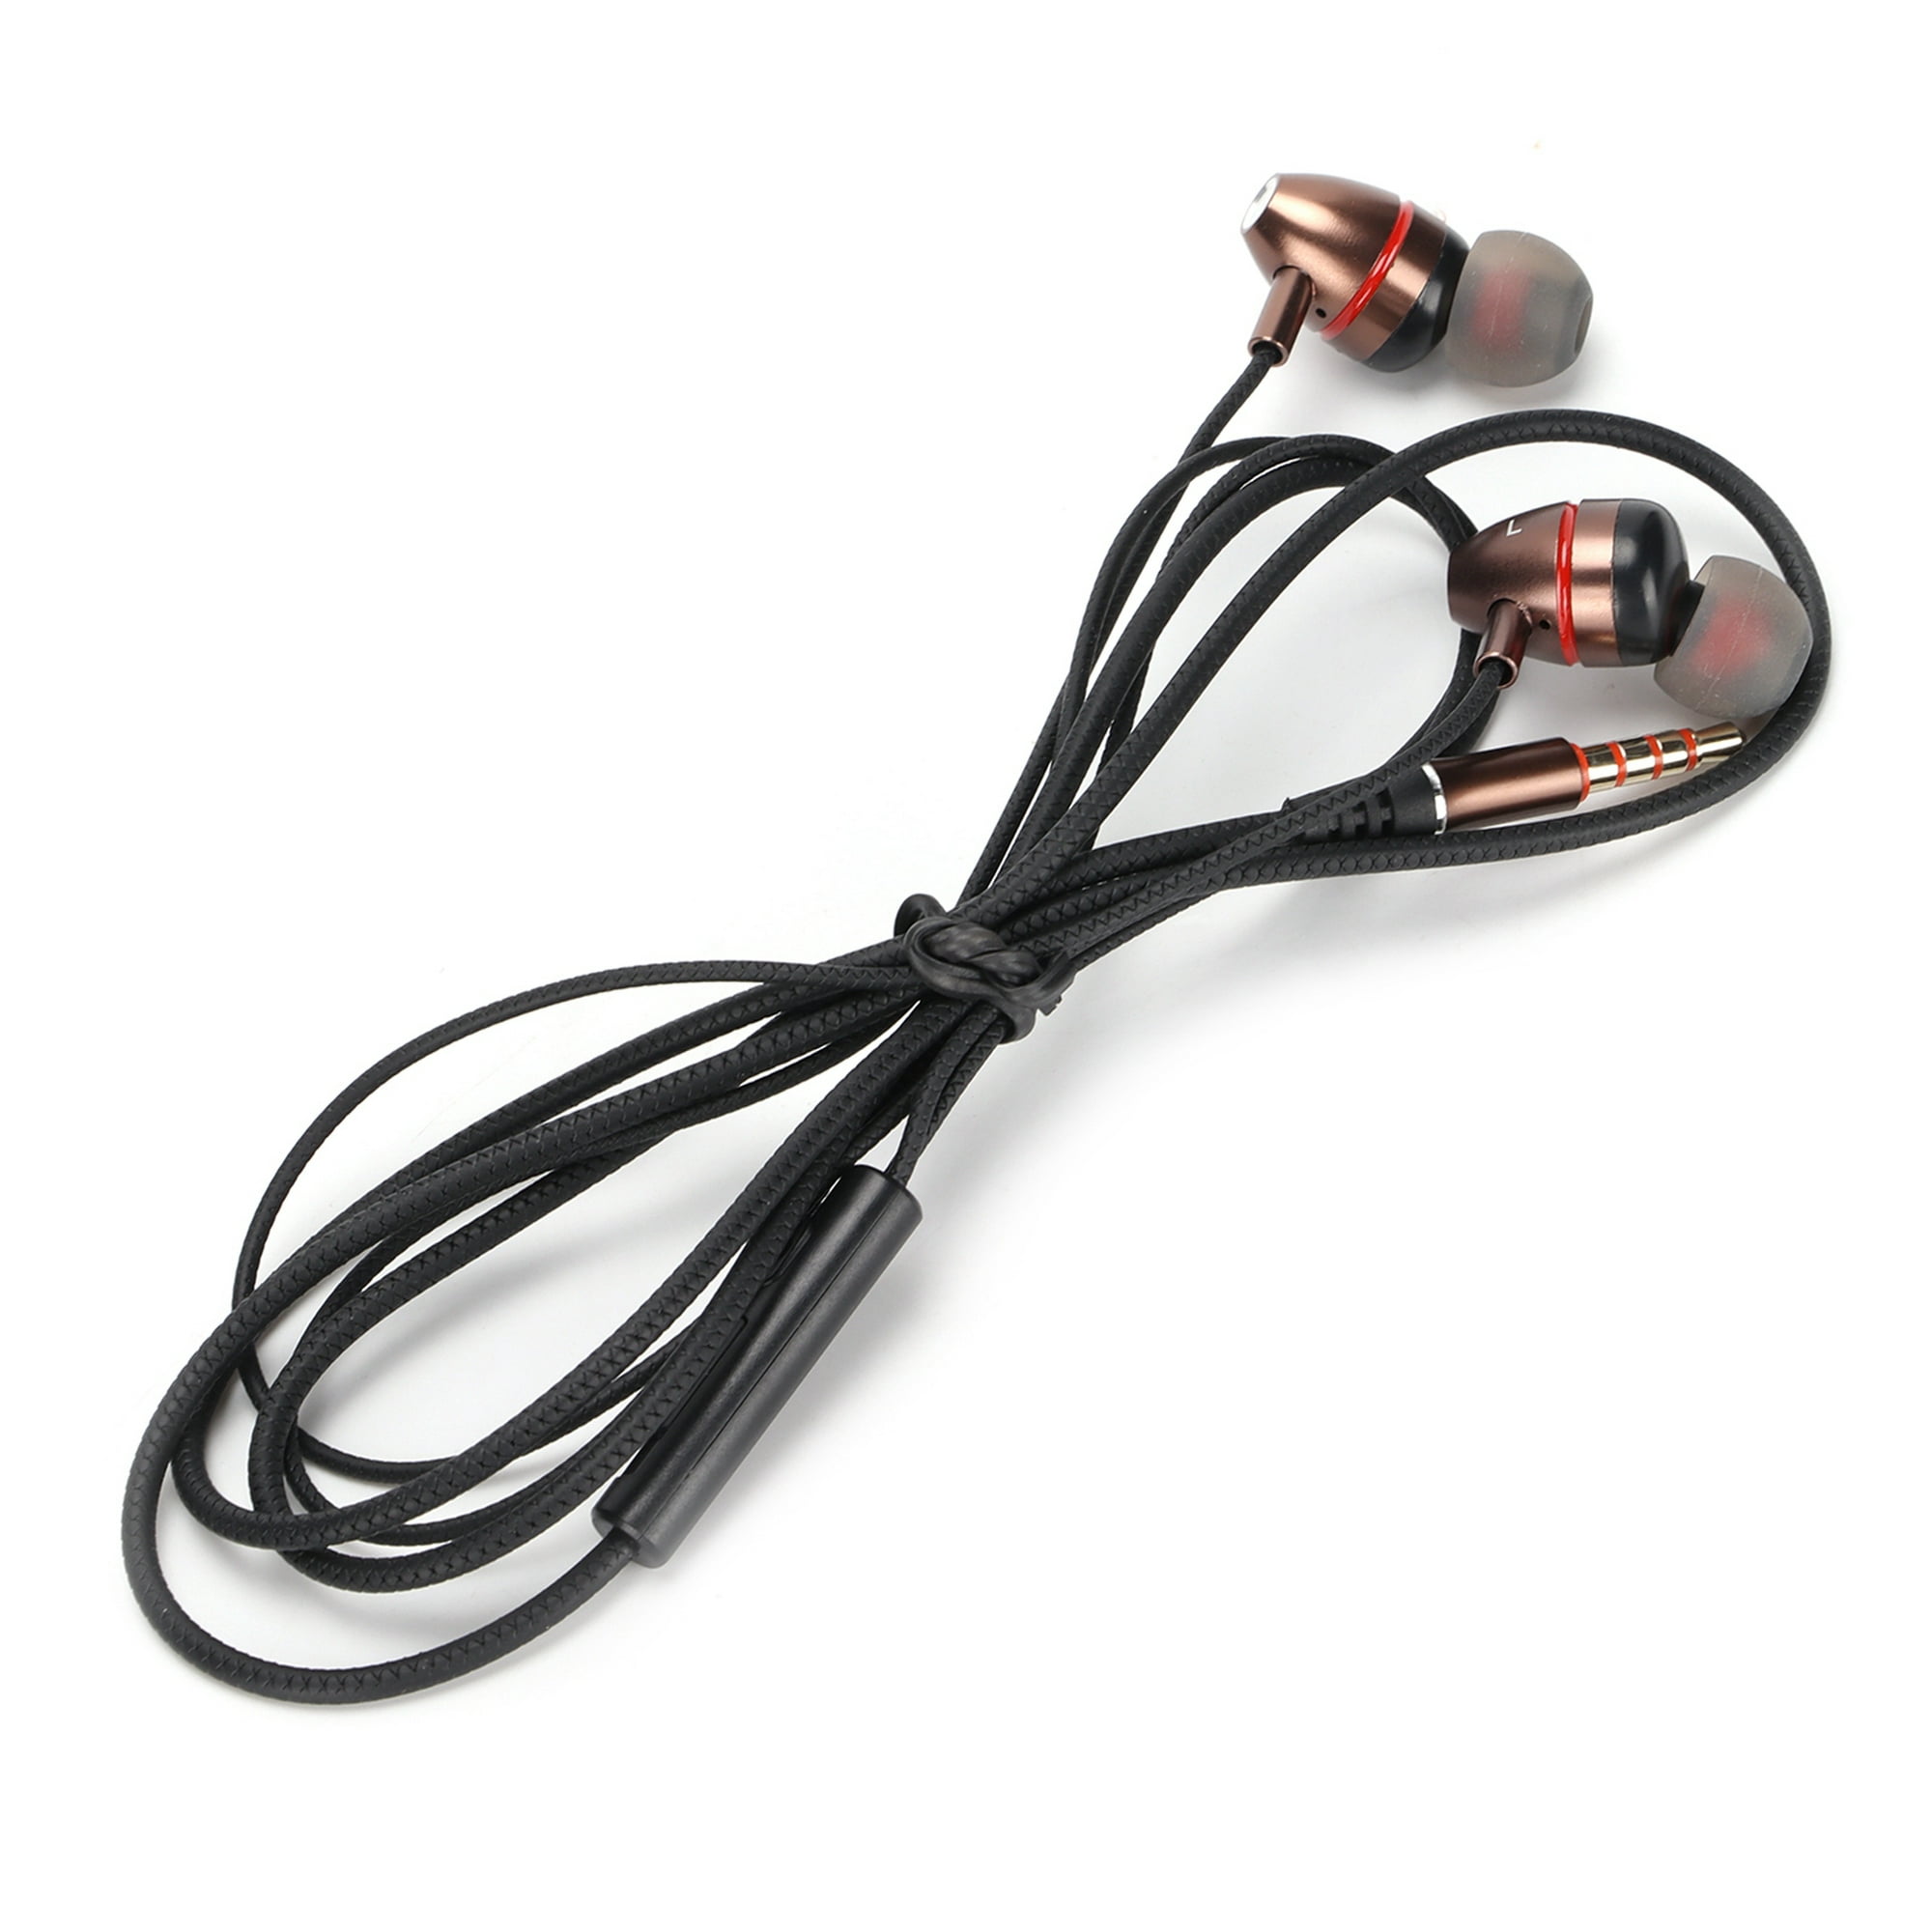 Auriculares intrauditivos con cables Extra largos, audífonos con